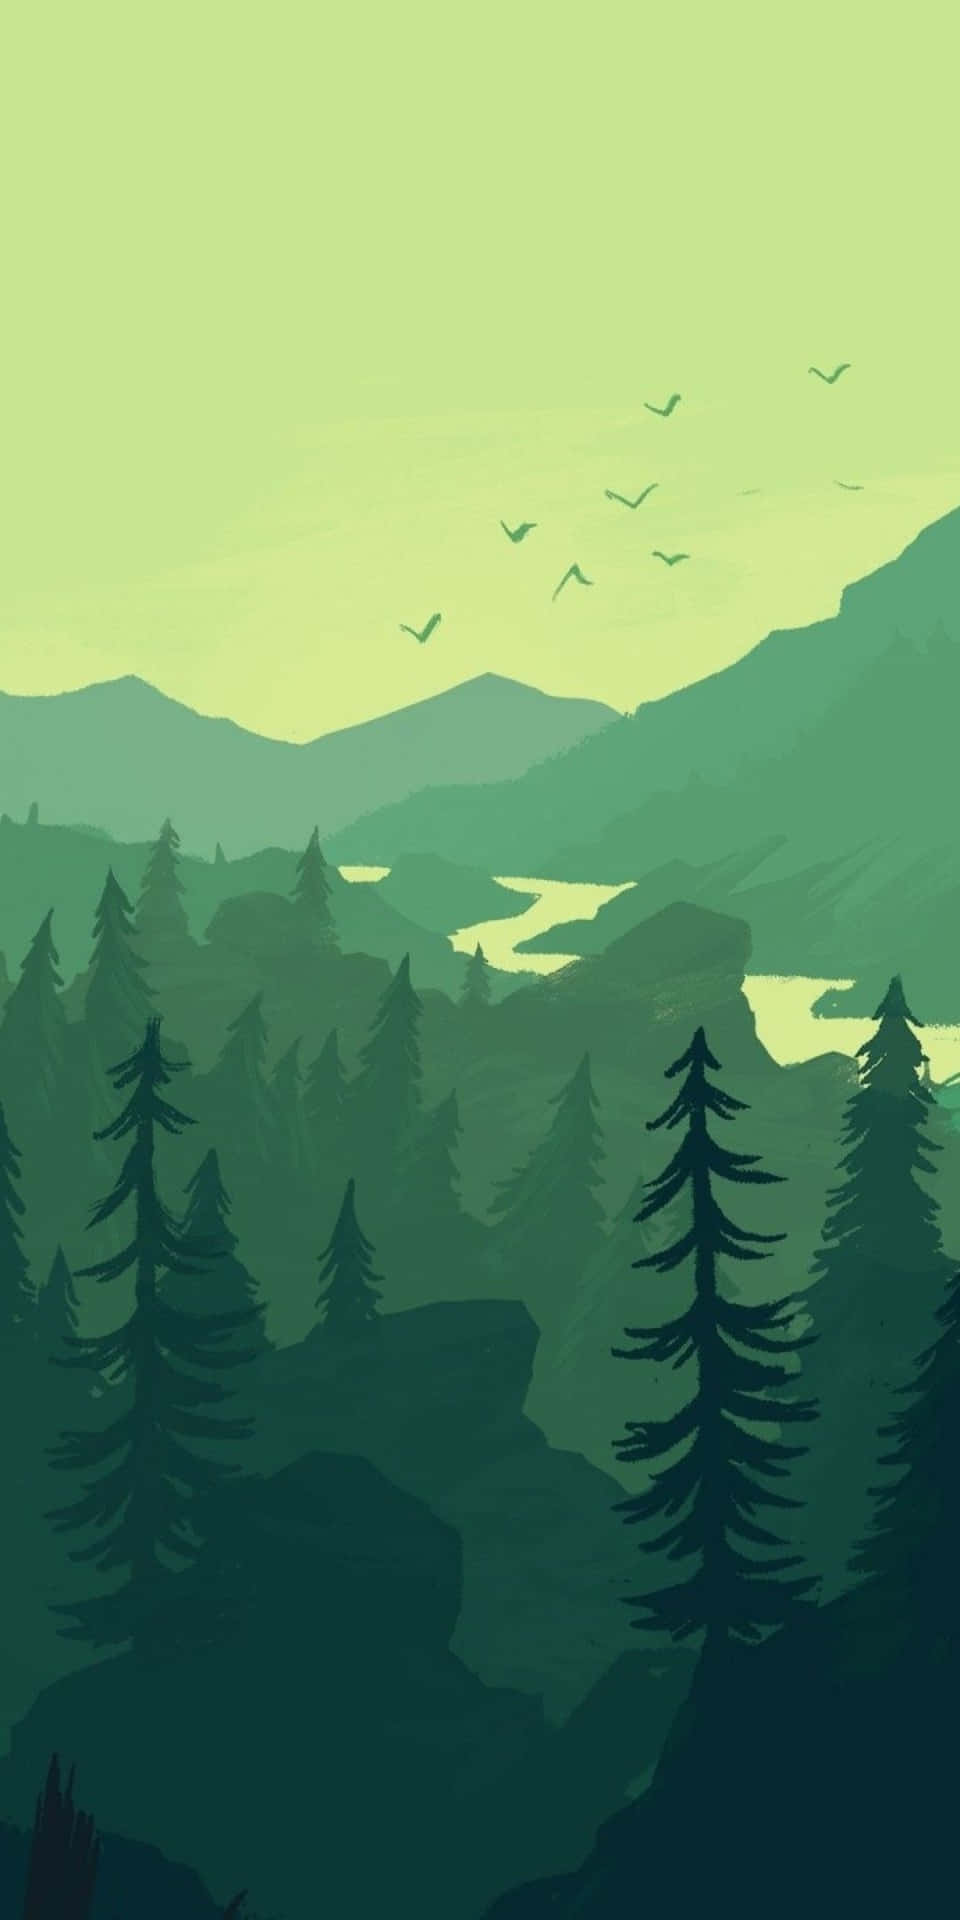 Fondominimalista De Pixel 3 Con Dibujo De Arte De Ventilador En El Bosque